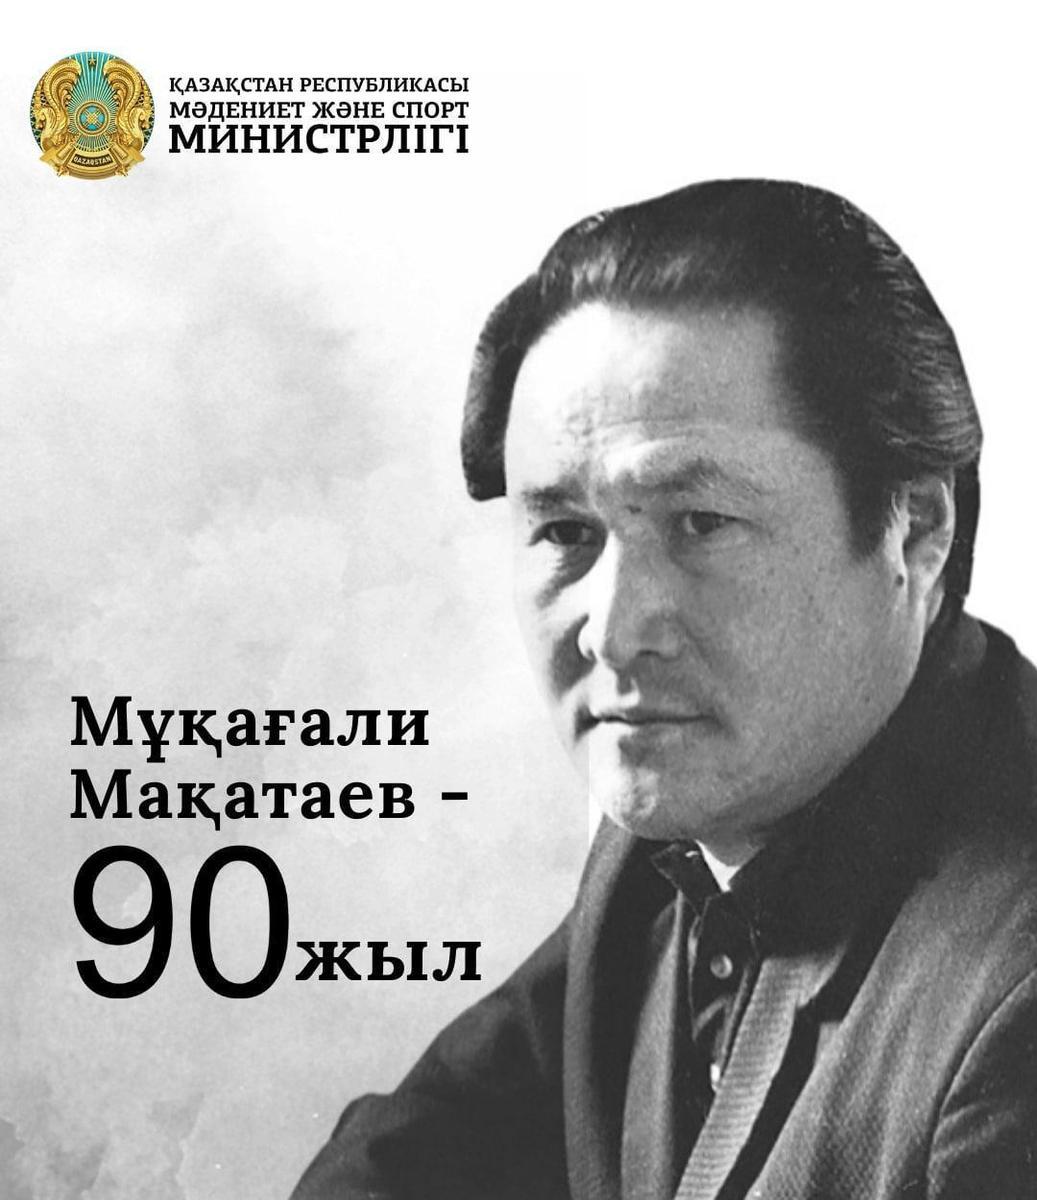 Мұқағали Мақатаевтың туғанына 90 жыл!